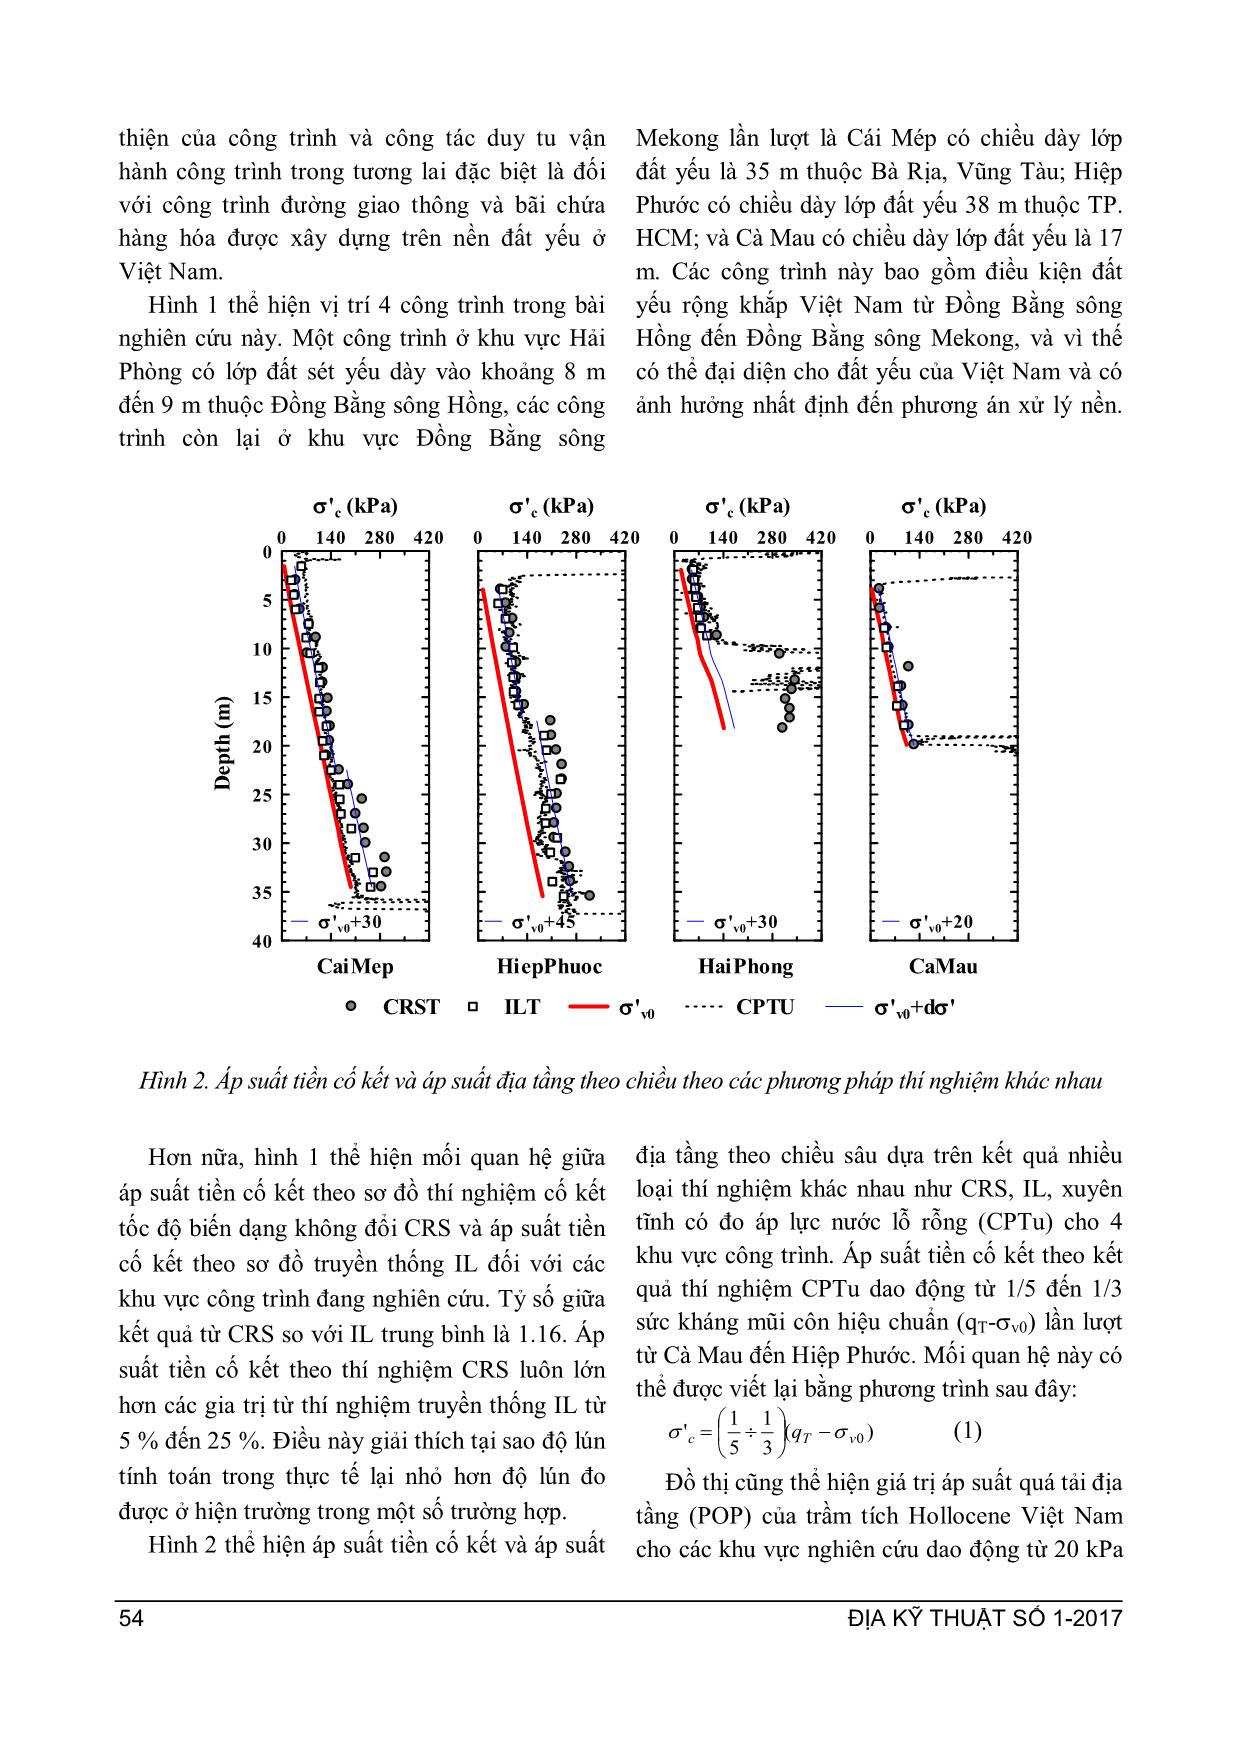 Xác định đặc trưng đất sét yếu Việt Nam theo thí nghiệm cố kết tốc độ biến dạng không đổi sử dụng trong phân tích bài cố kết thấm trang 4